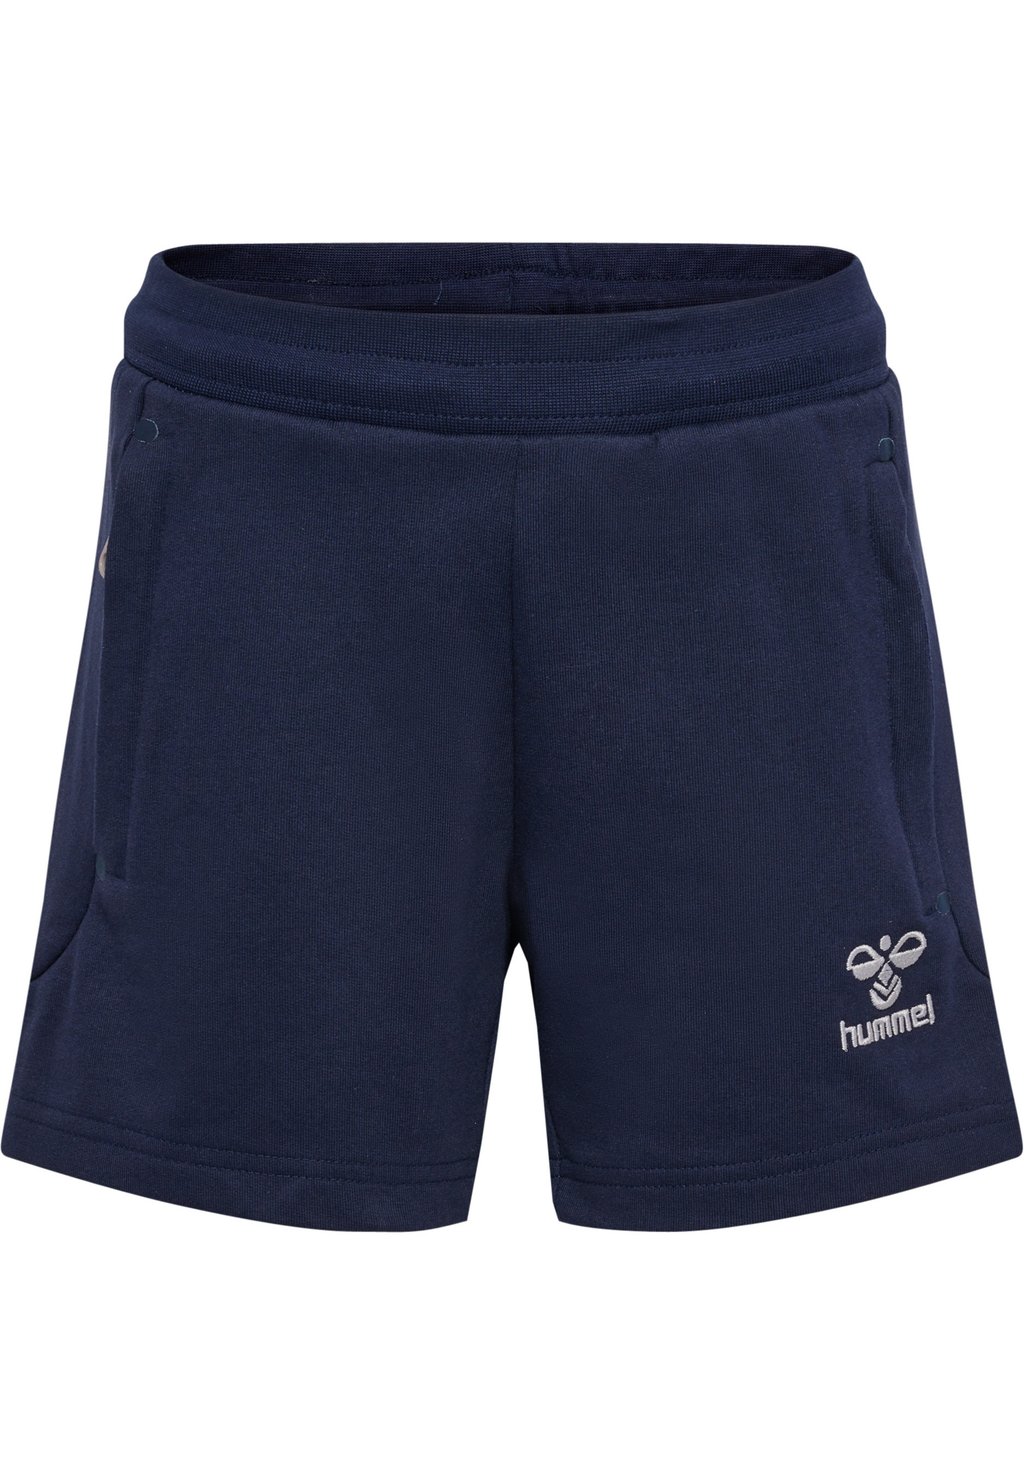 короткие спортивные штаны hummel цвет marine Короткие спортивные брюки MOVE GRID Hummel, цвет marine